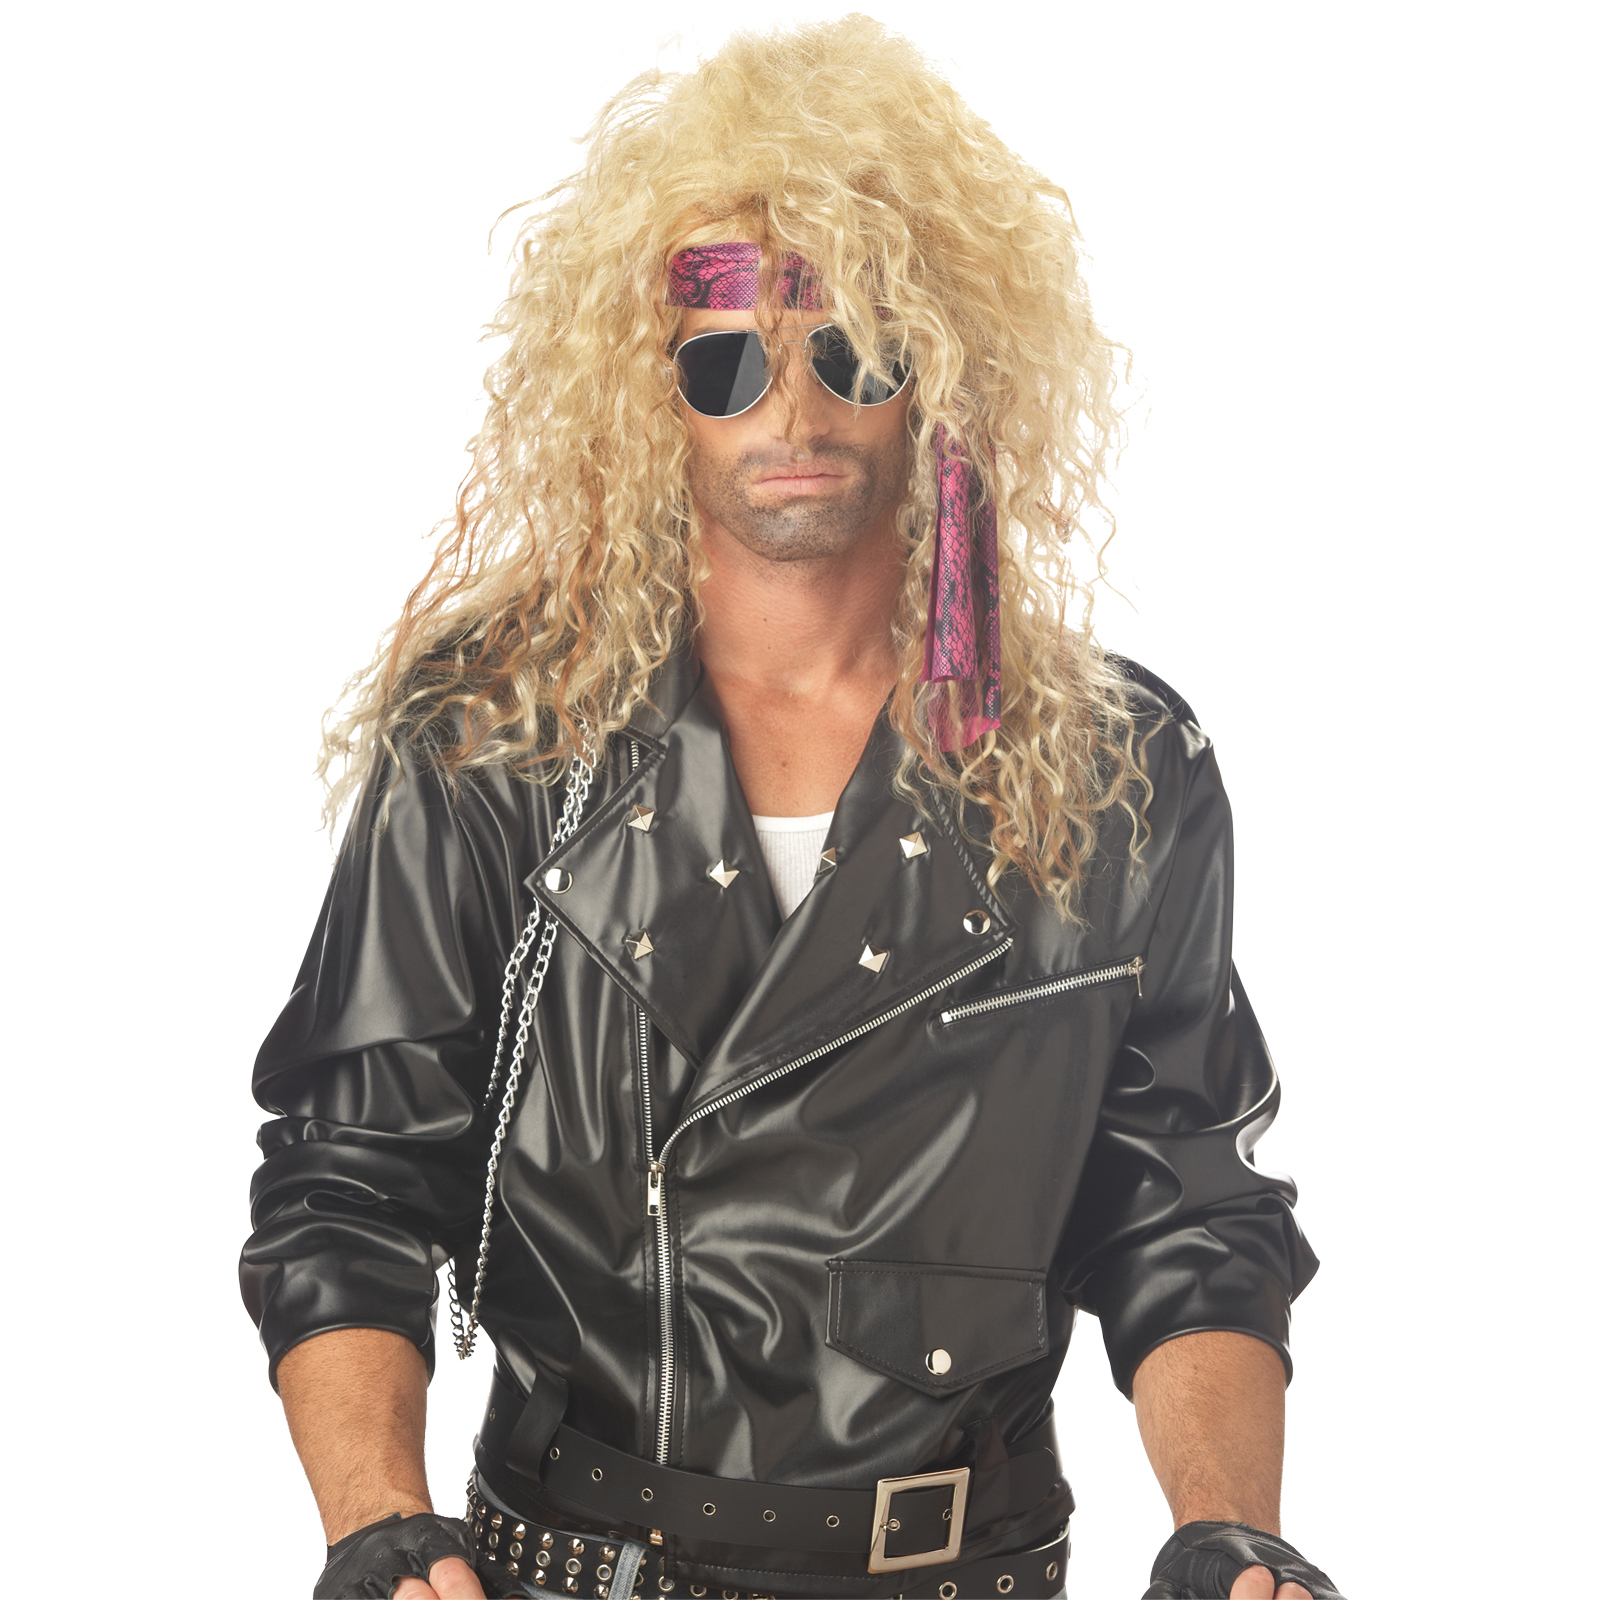 Heavy Metal Rocker Blonde Wig Costume Accessory